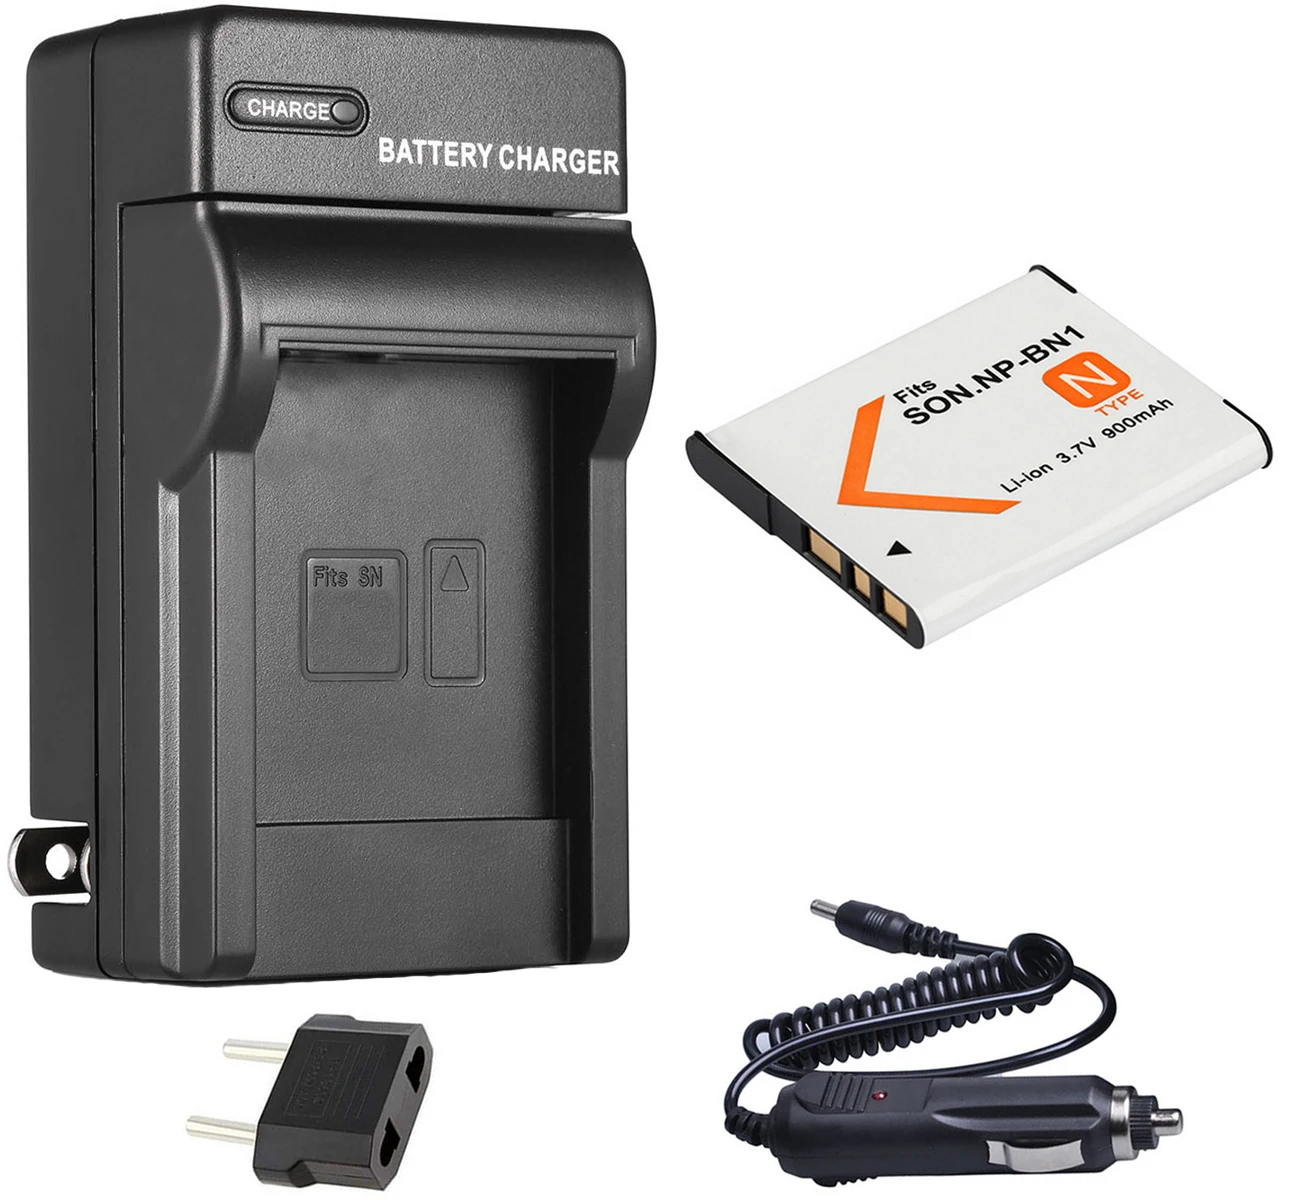 USB caricabatterie veloce per Sony Cybershot dsc-w730/dsc-wx5/dsc-wx7 